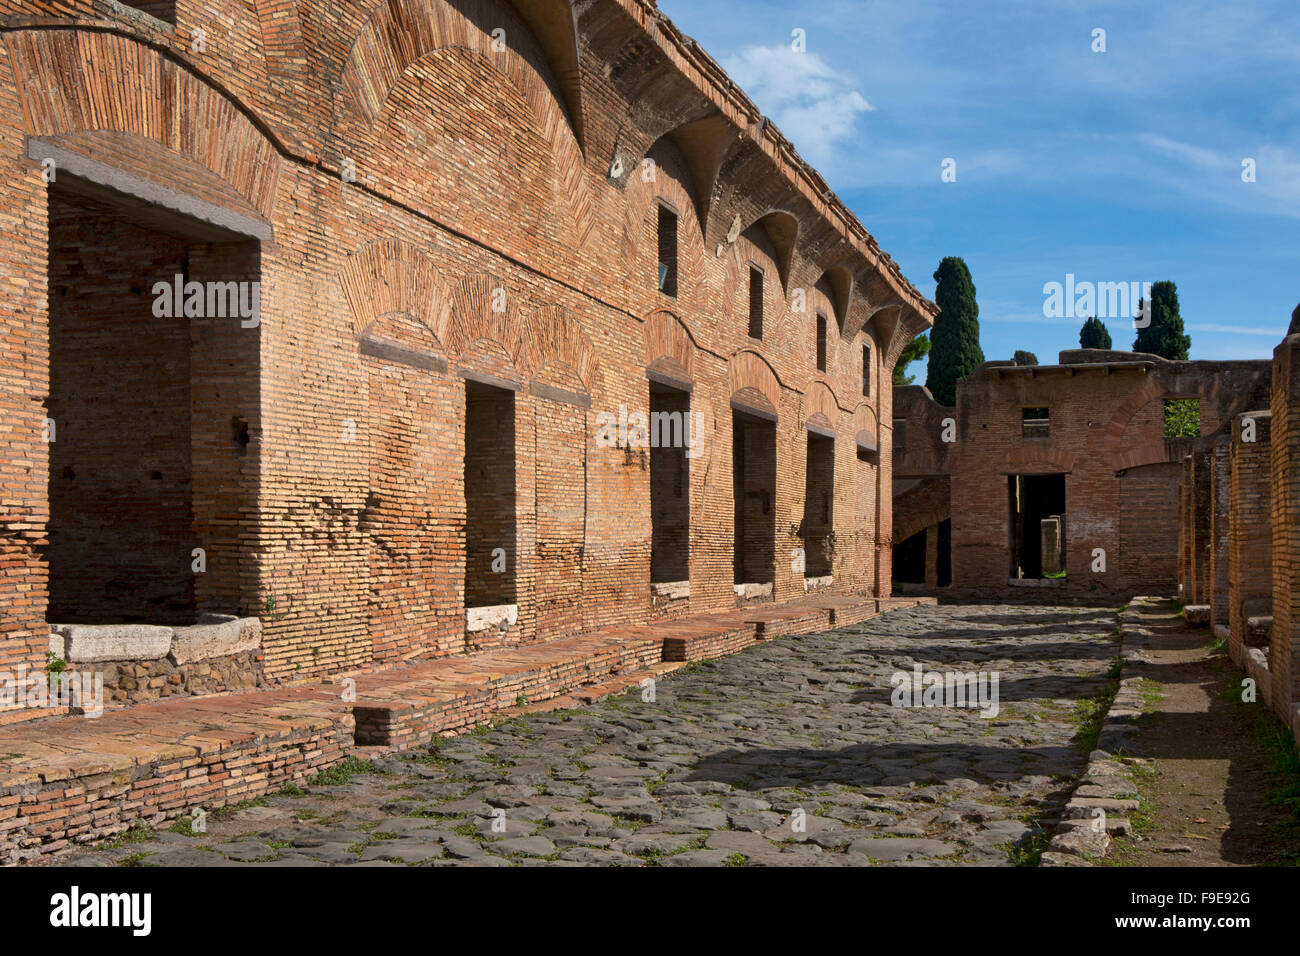 Chambre de Diane et street dans l'ancien port romain d'Ostie, près de Rome, Italie, Europe Banque D'Images